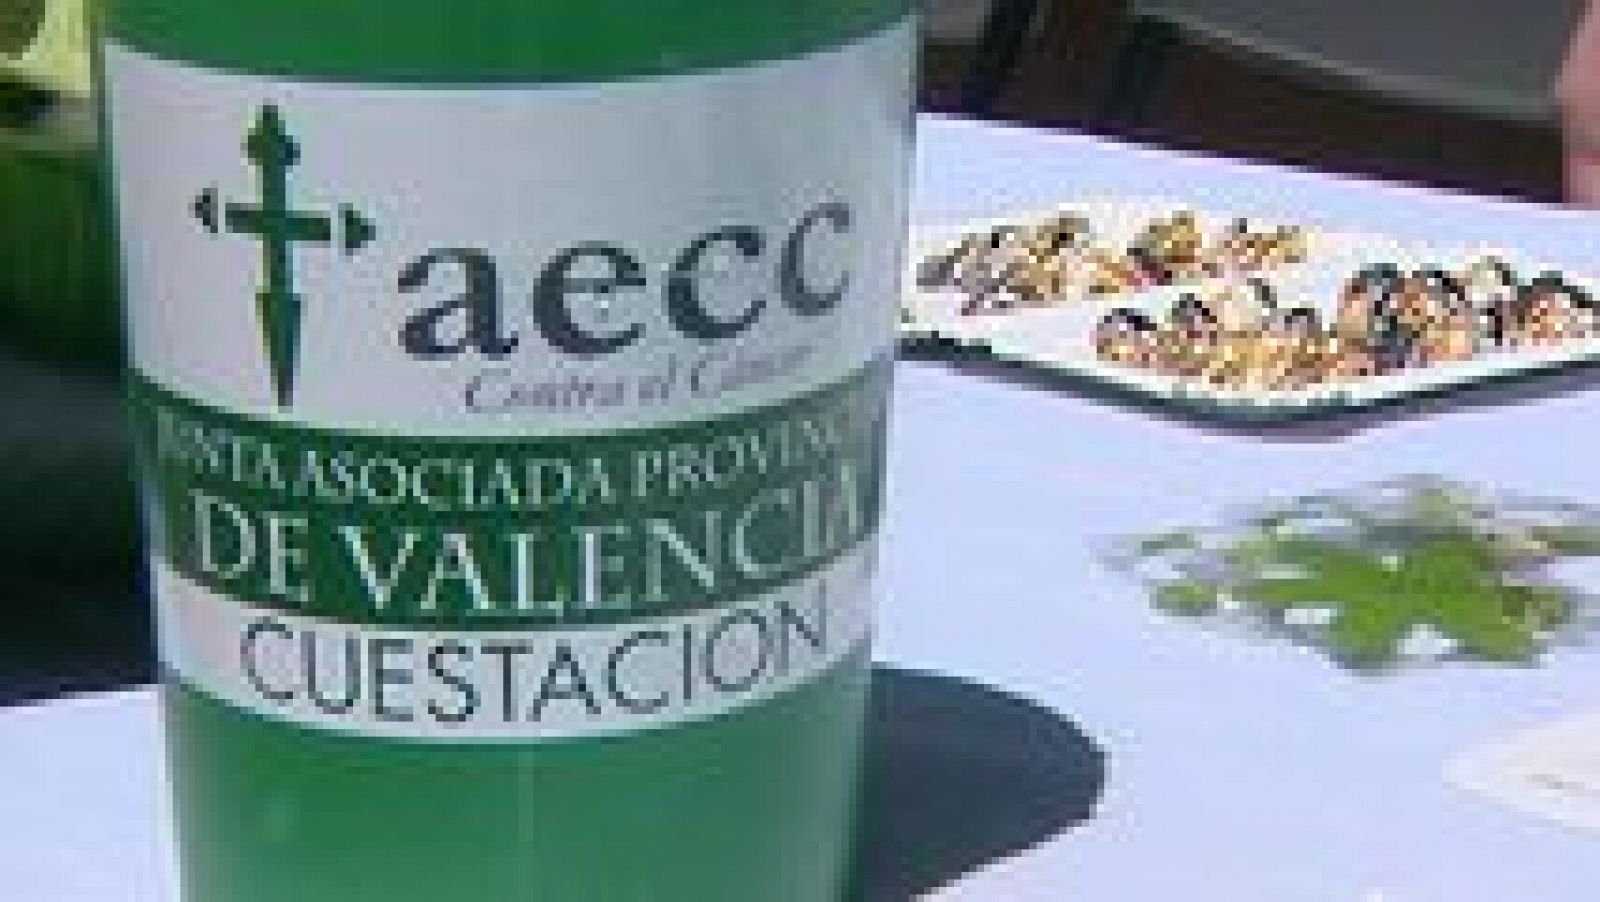 L'informatiu - Comunitat Valenciana: L'Informatiu - Comunitat Valenciana 2 - 06/05/15 | RTVE Play